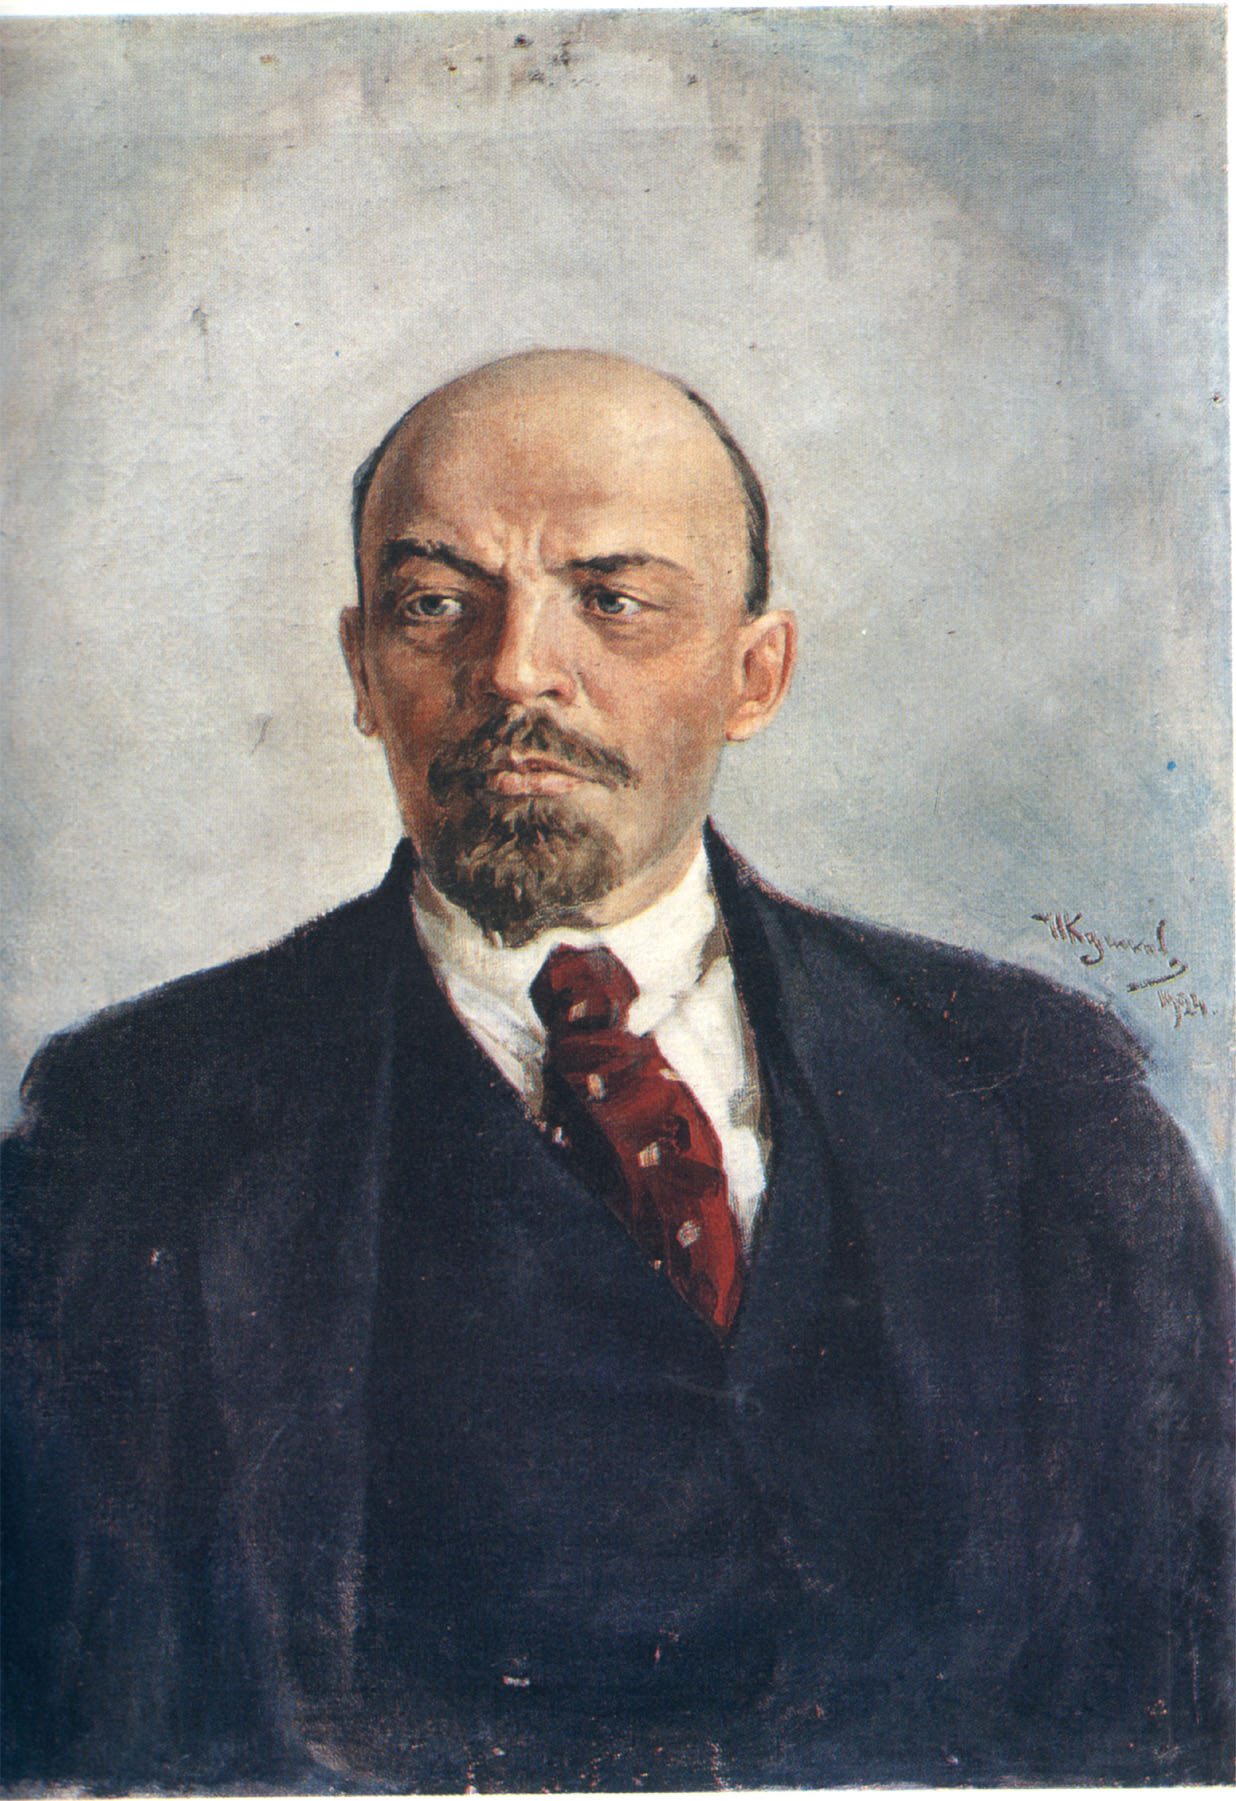 Vladimir Lenin Wallpaper Background Image